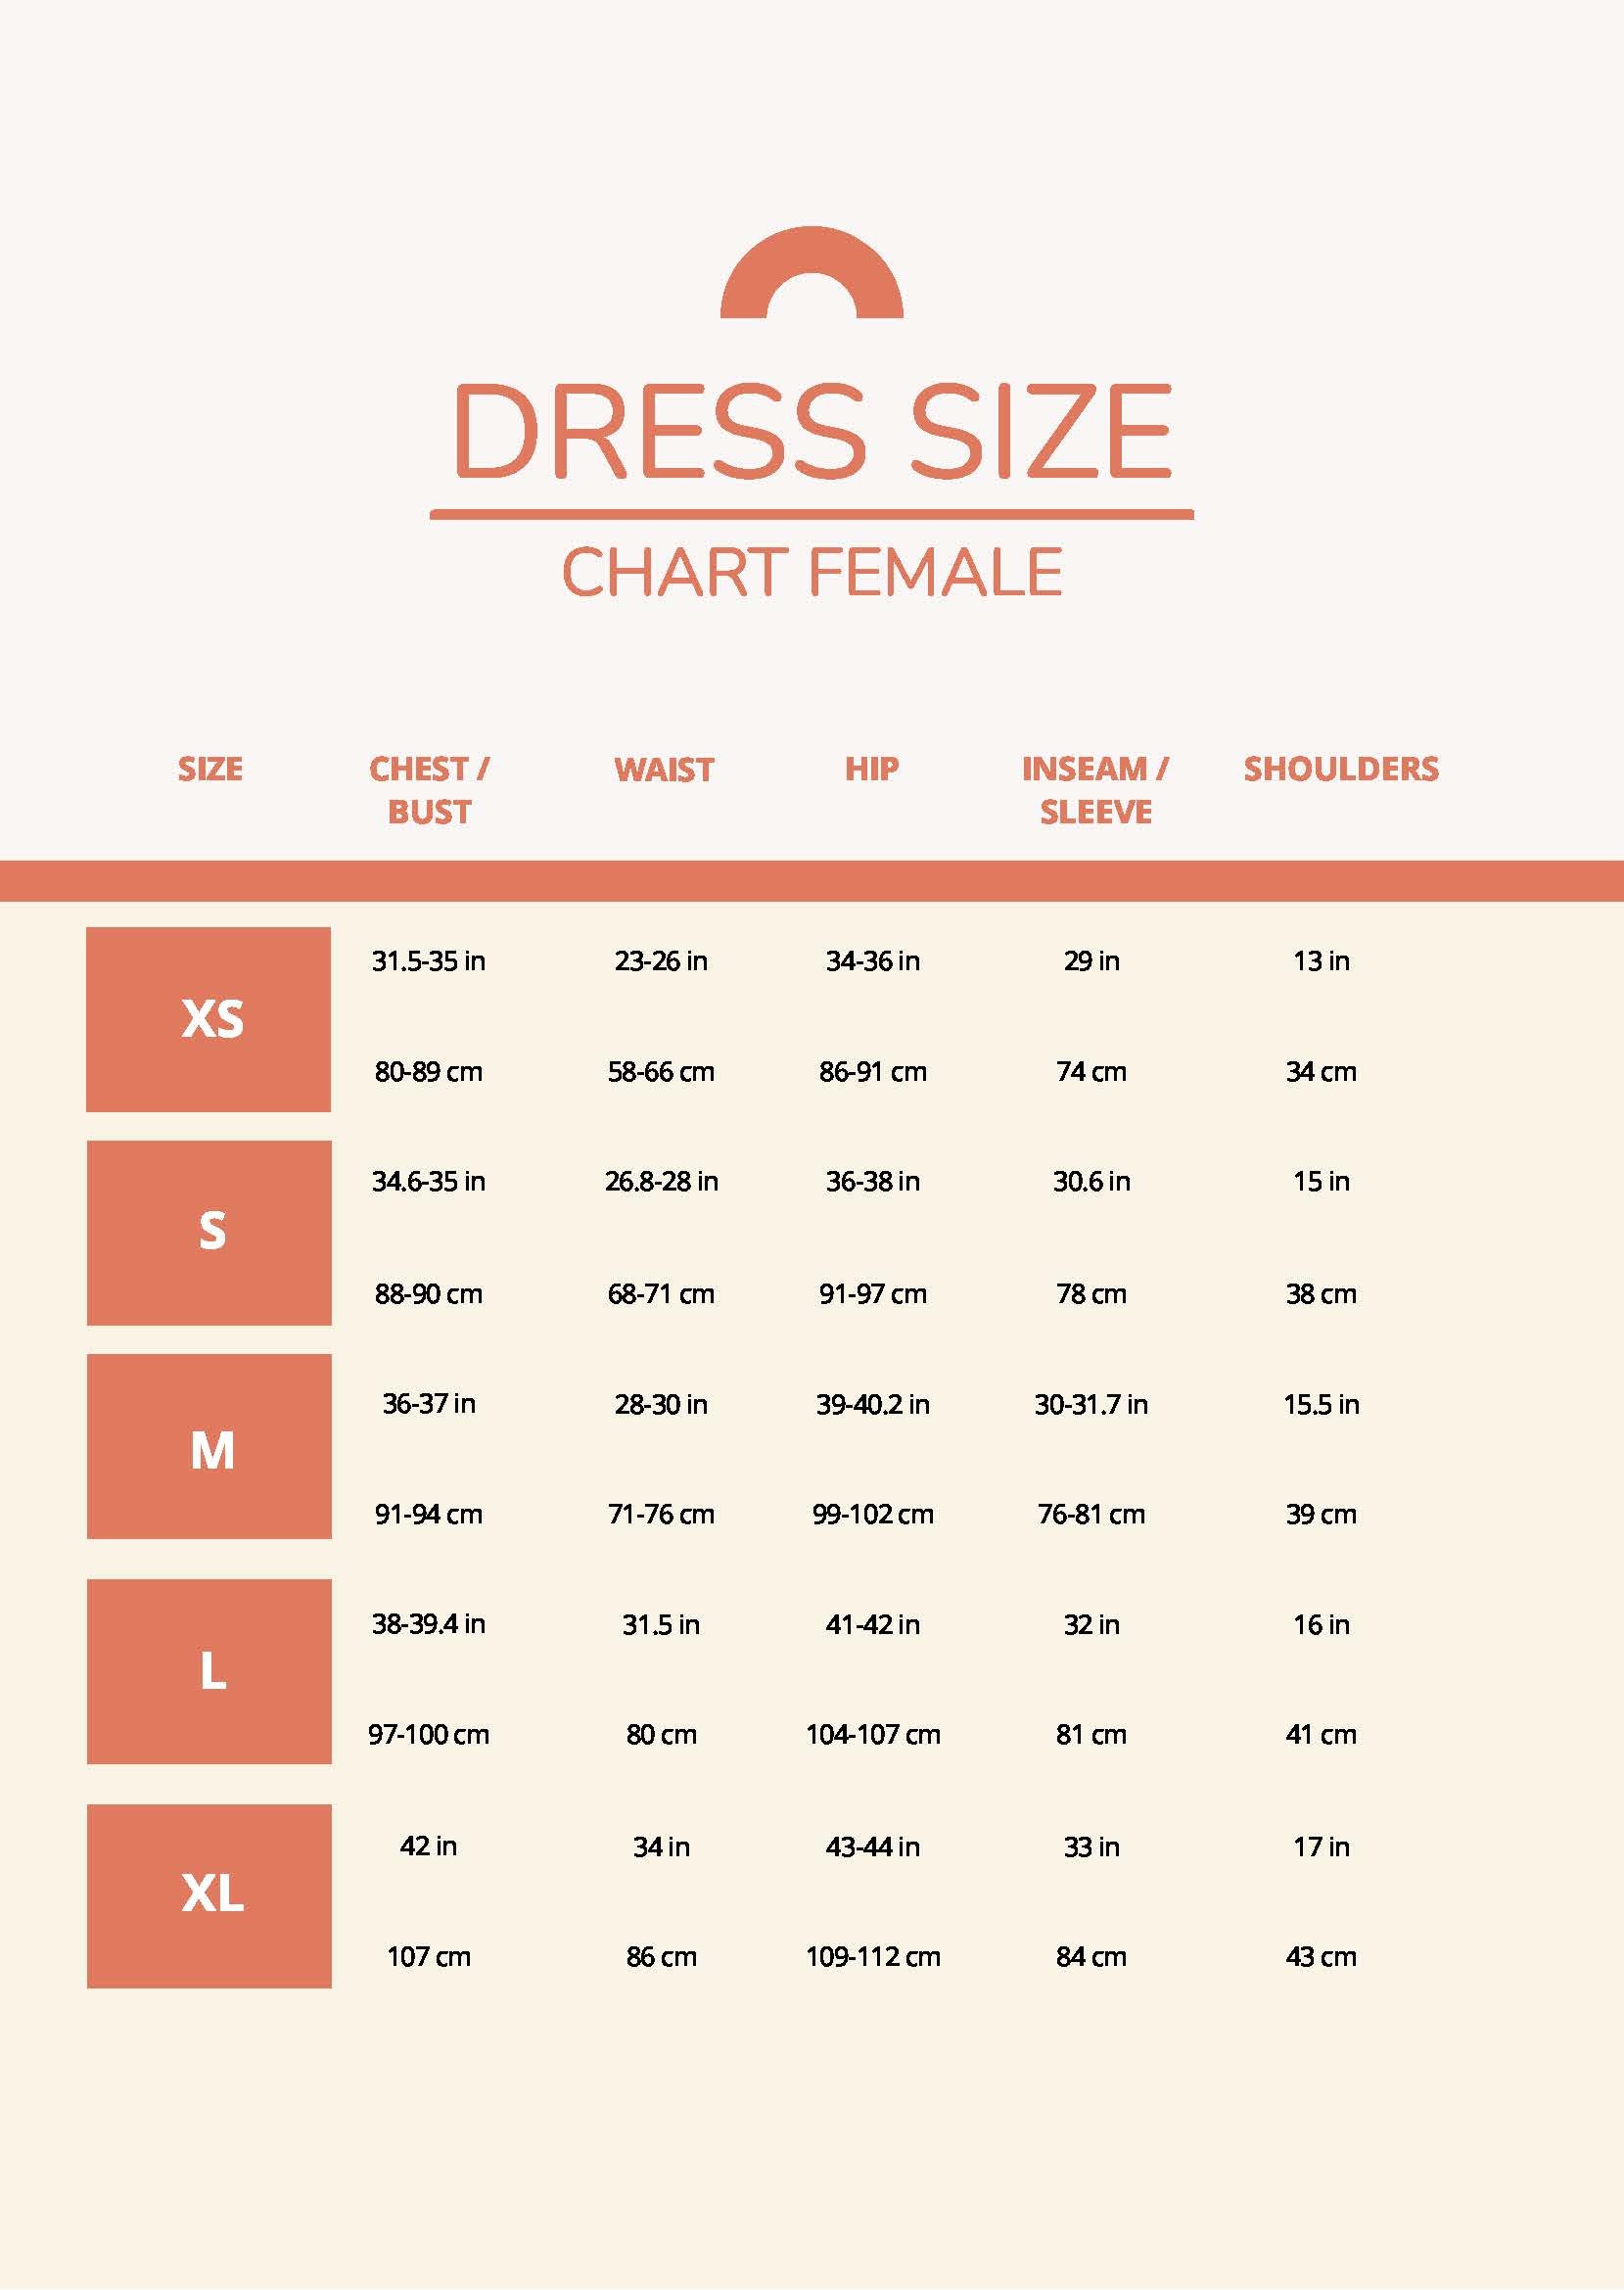 dress size chart female 4y71y